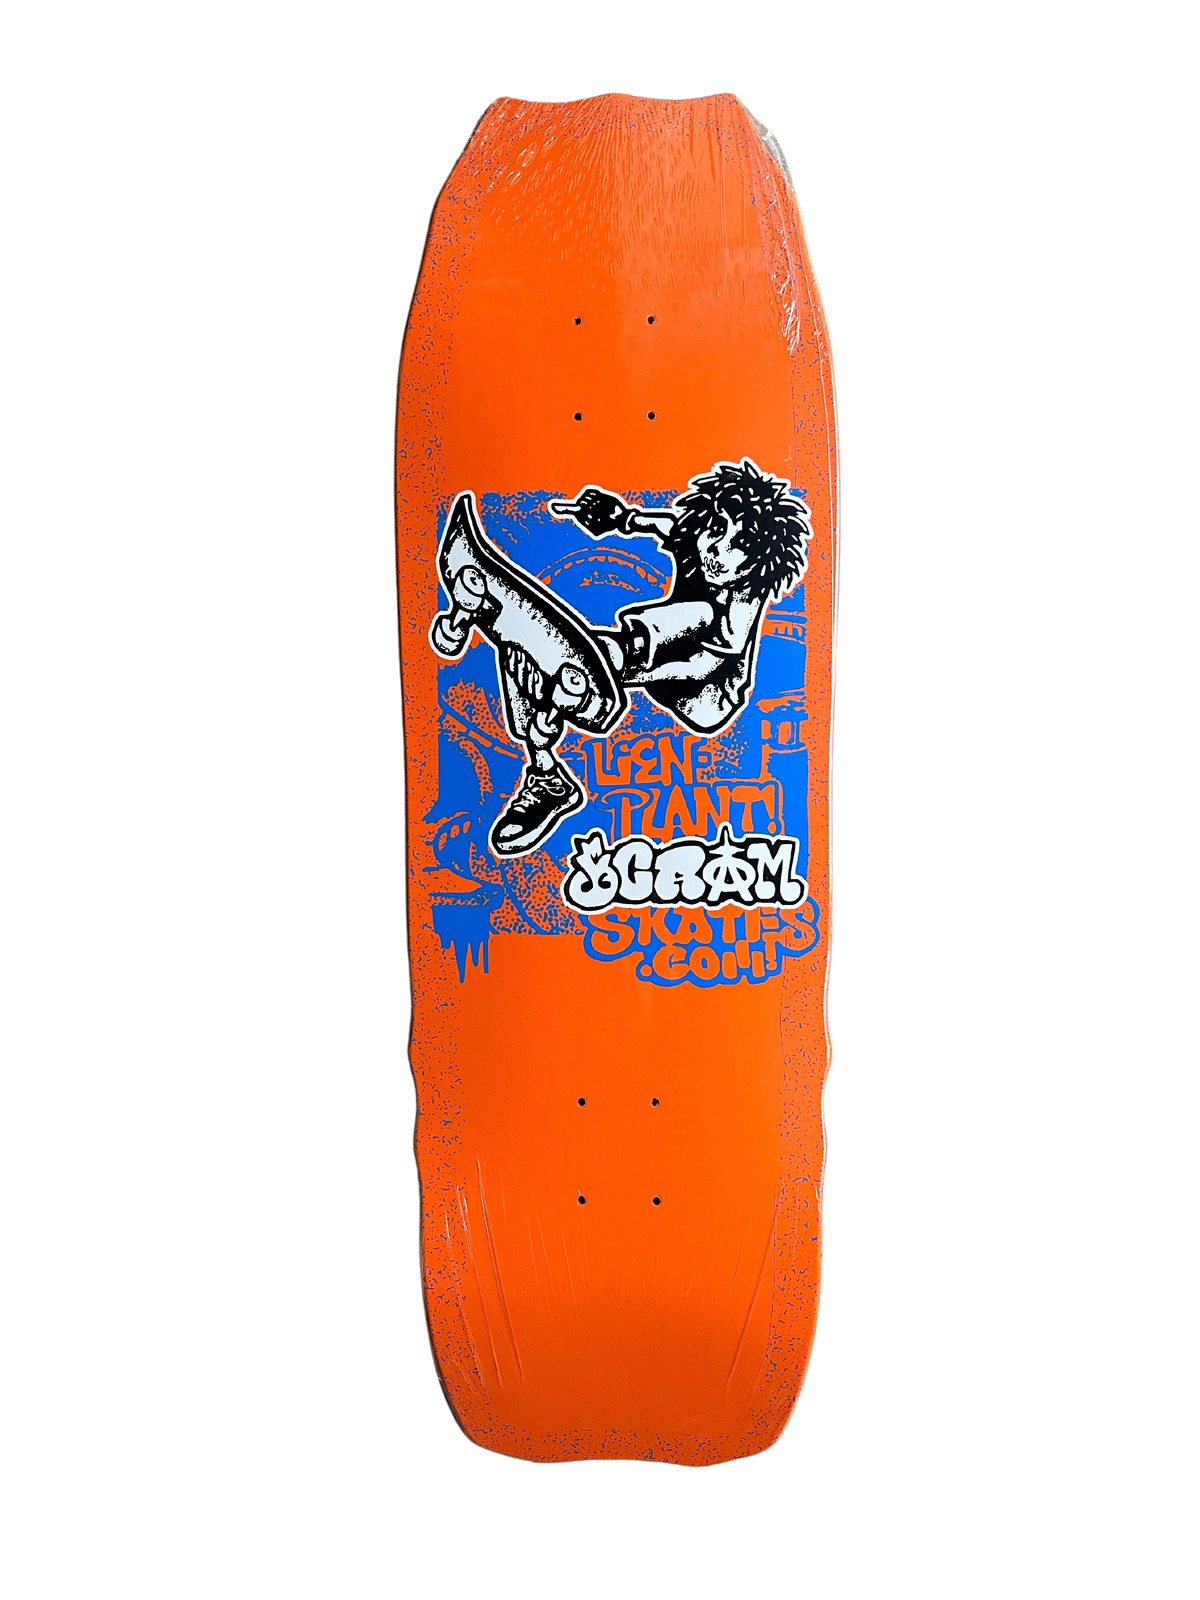 人気 Skateboard SKATES SCRAM Deck デッキ 10.5 スケートボード - www